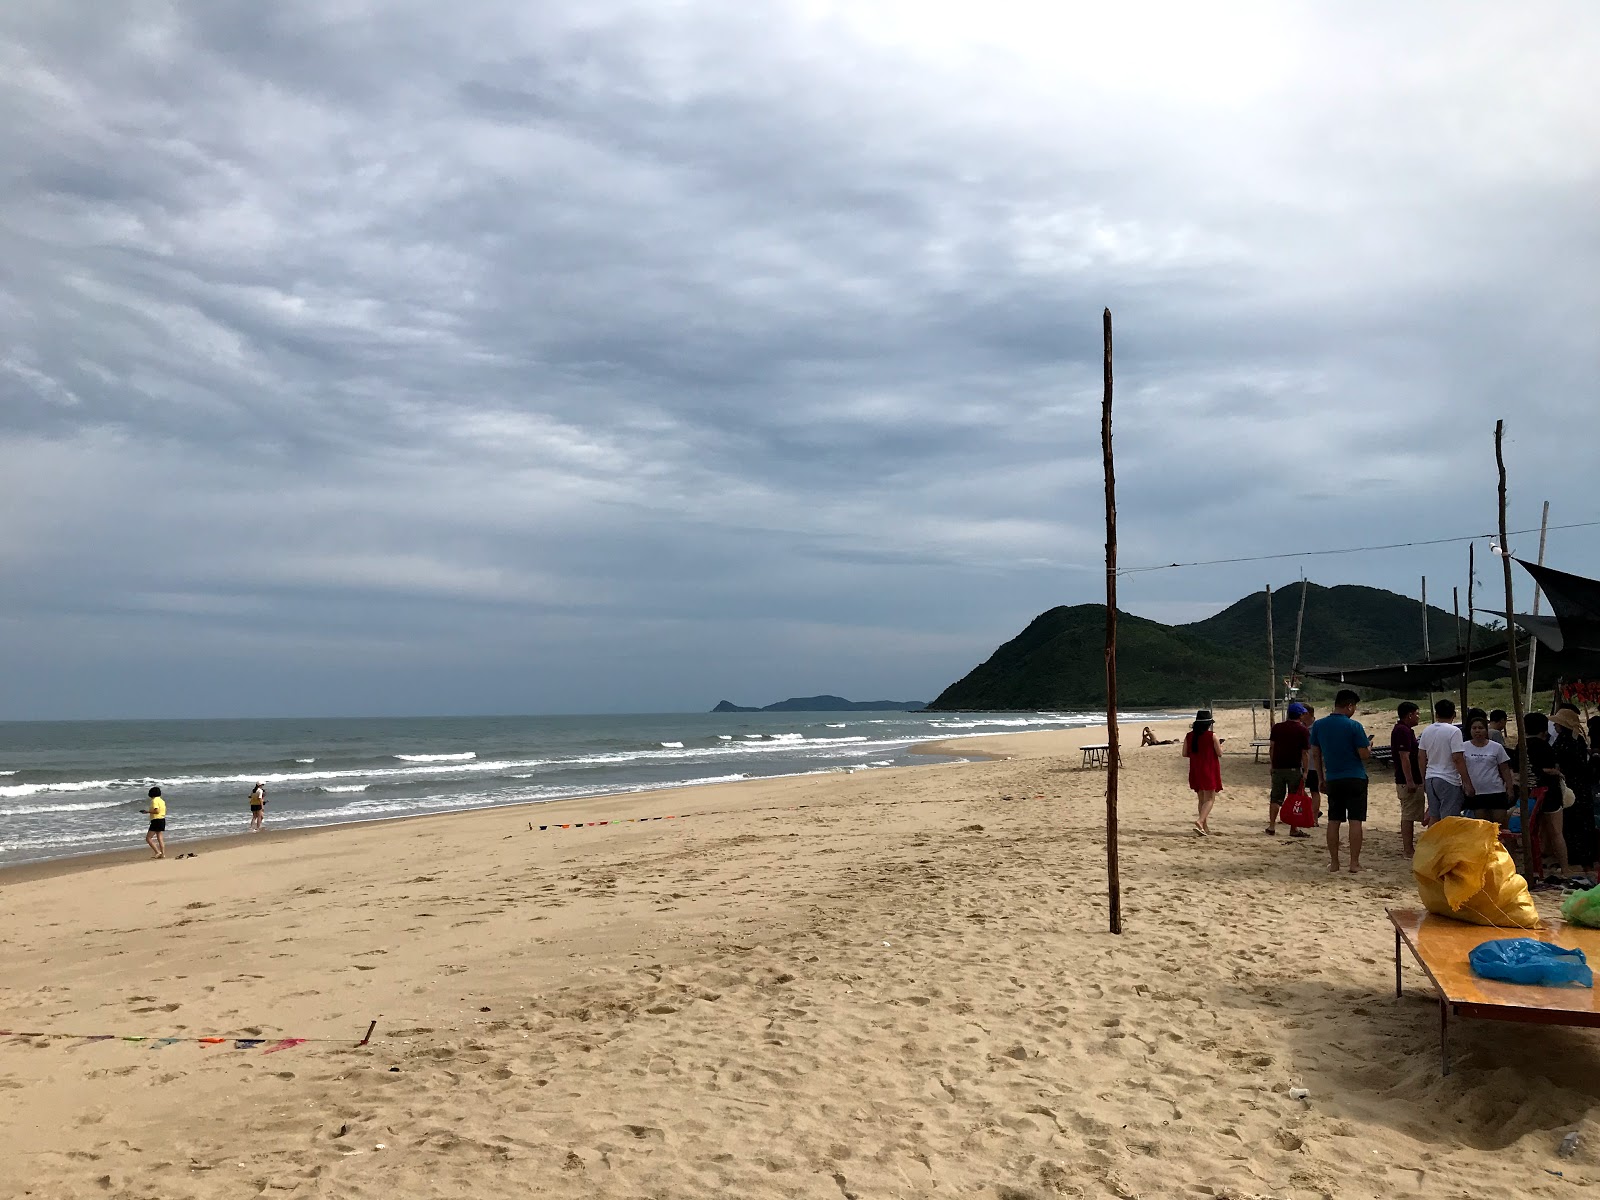 Minh Chau Beach'in fotoğrafı parlak kum yüzey ile